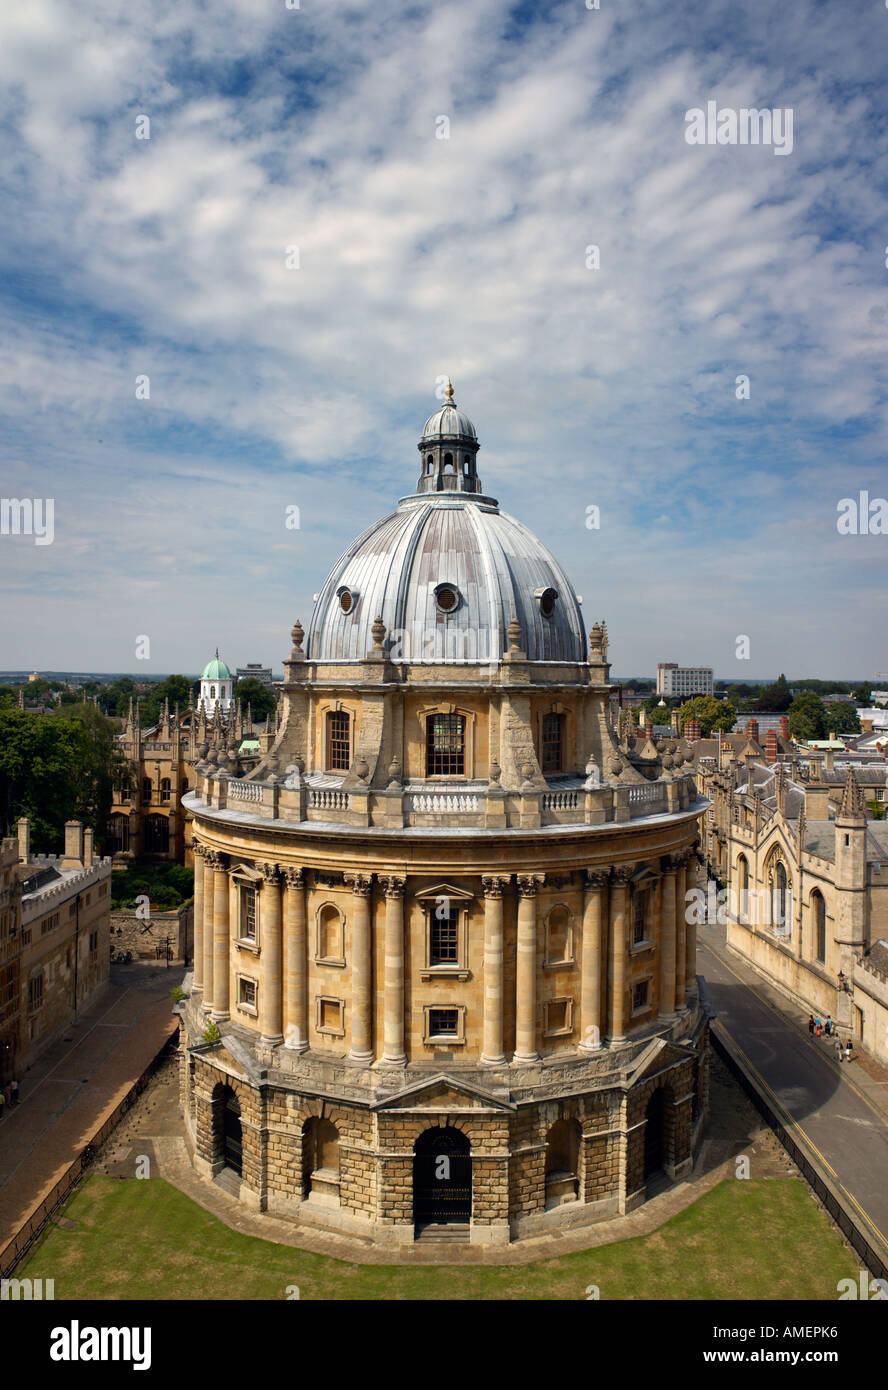 Vue aérienne le mode portrait de la Radcliffe Camera Oxford, prises en 2006 Banque D'Images